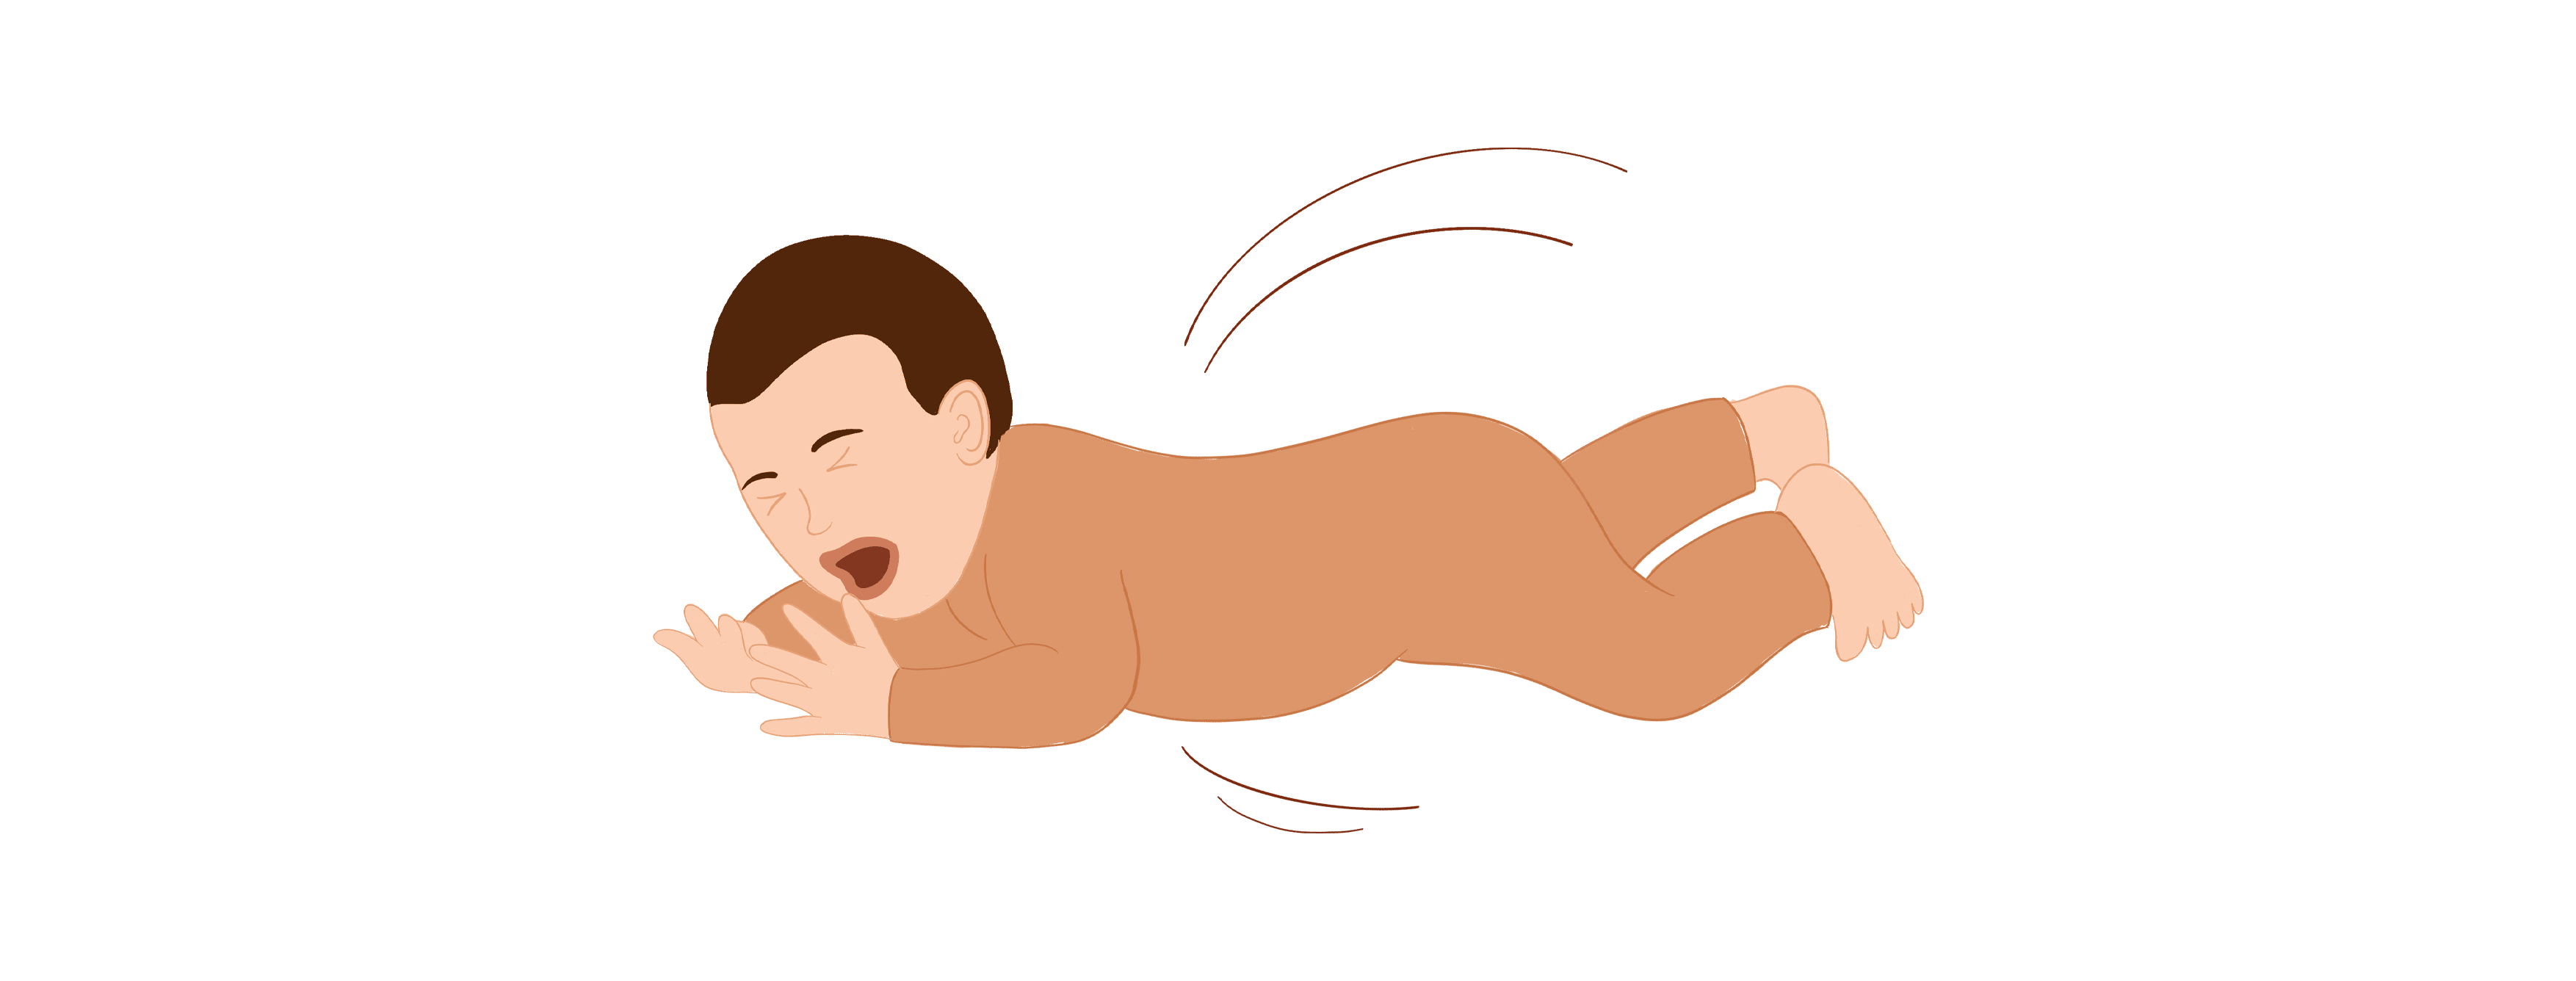 Les gestes qui sauvent chez bébé - enfant - Tajinebanane